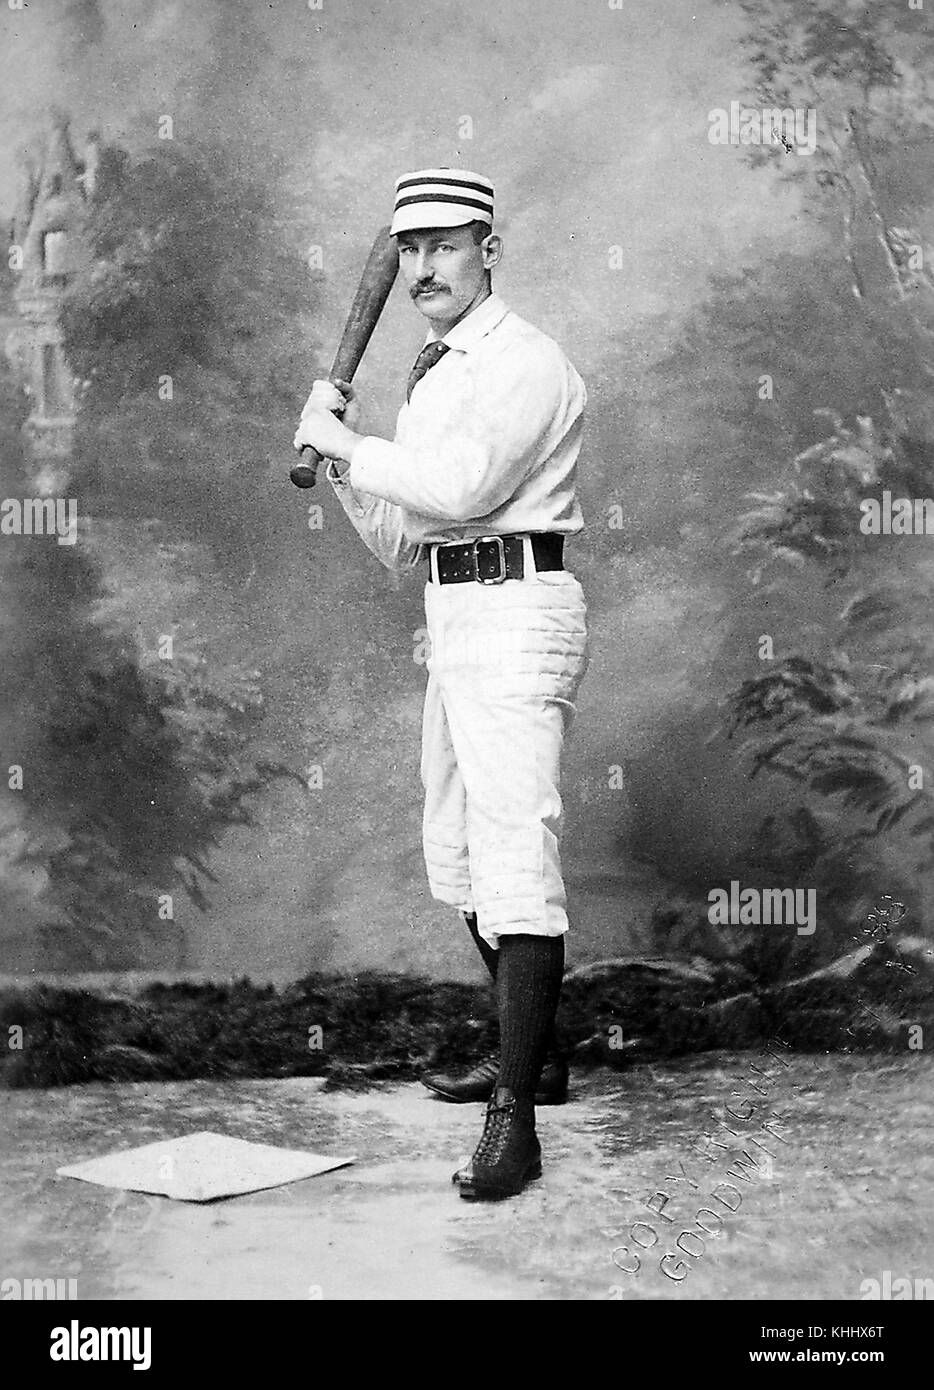 Photo d'un joueur de baseball non identifié du 19th siècle sous forme de batting, par Gilbert Bacon, Philadelphie, 1900. De la bibliothèque publique de New York. Banque D'Images